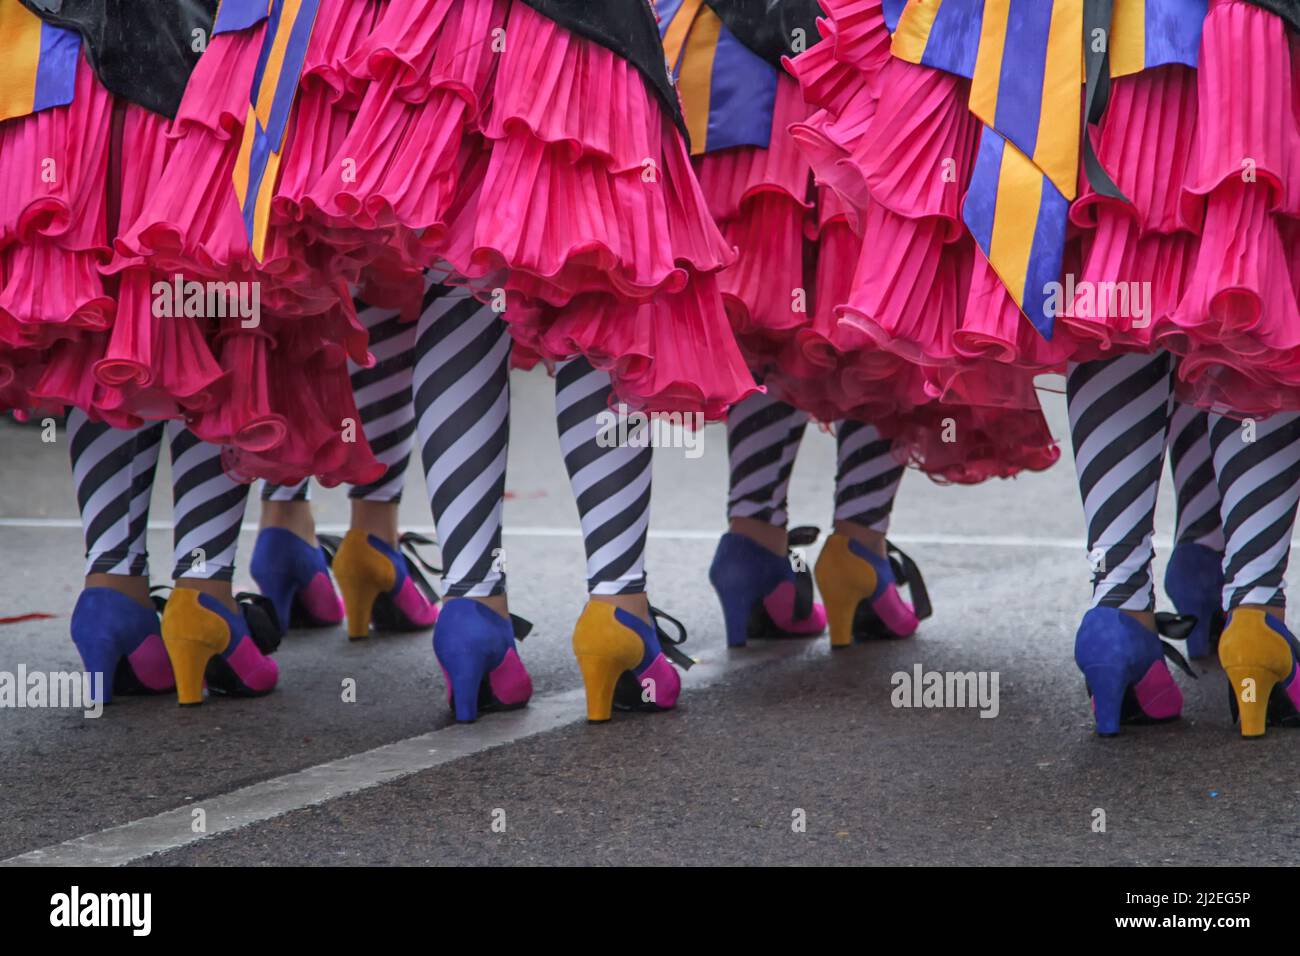 Portugal Carnaval Ovar - Rosa Rüschen, gestreippe Beine und bunte Schuhe - Amor AO Rubro - Love on Fire - Grupo Passerelle - Bailarinos de Válega Stockfoto